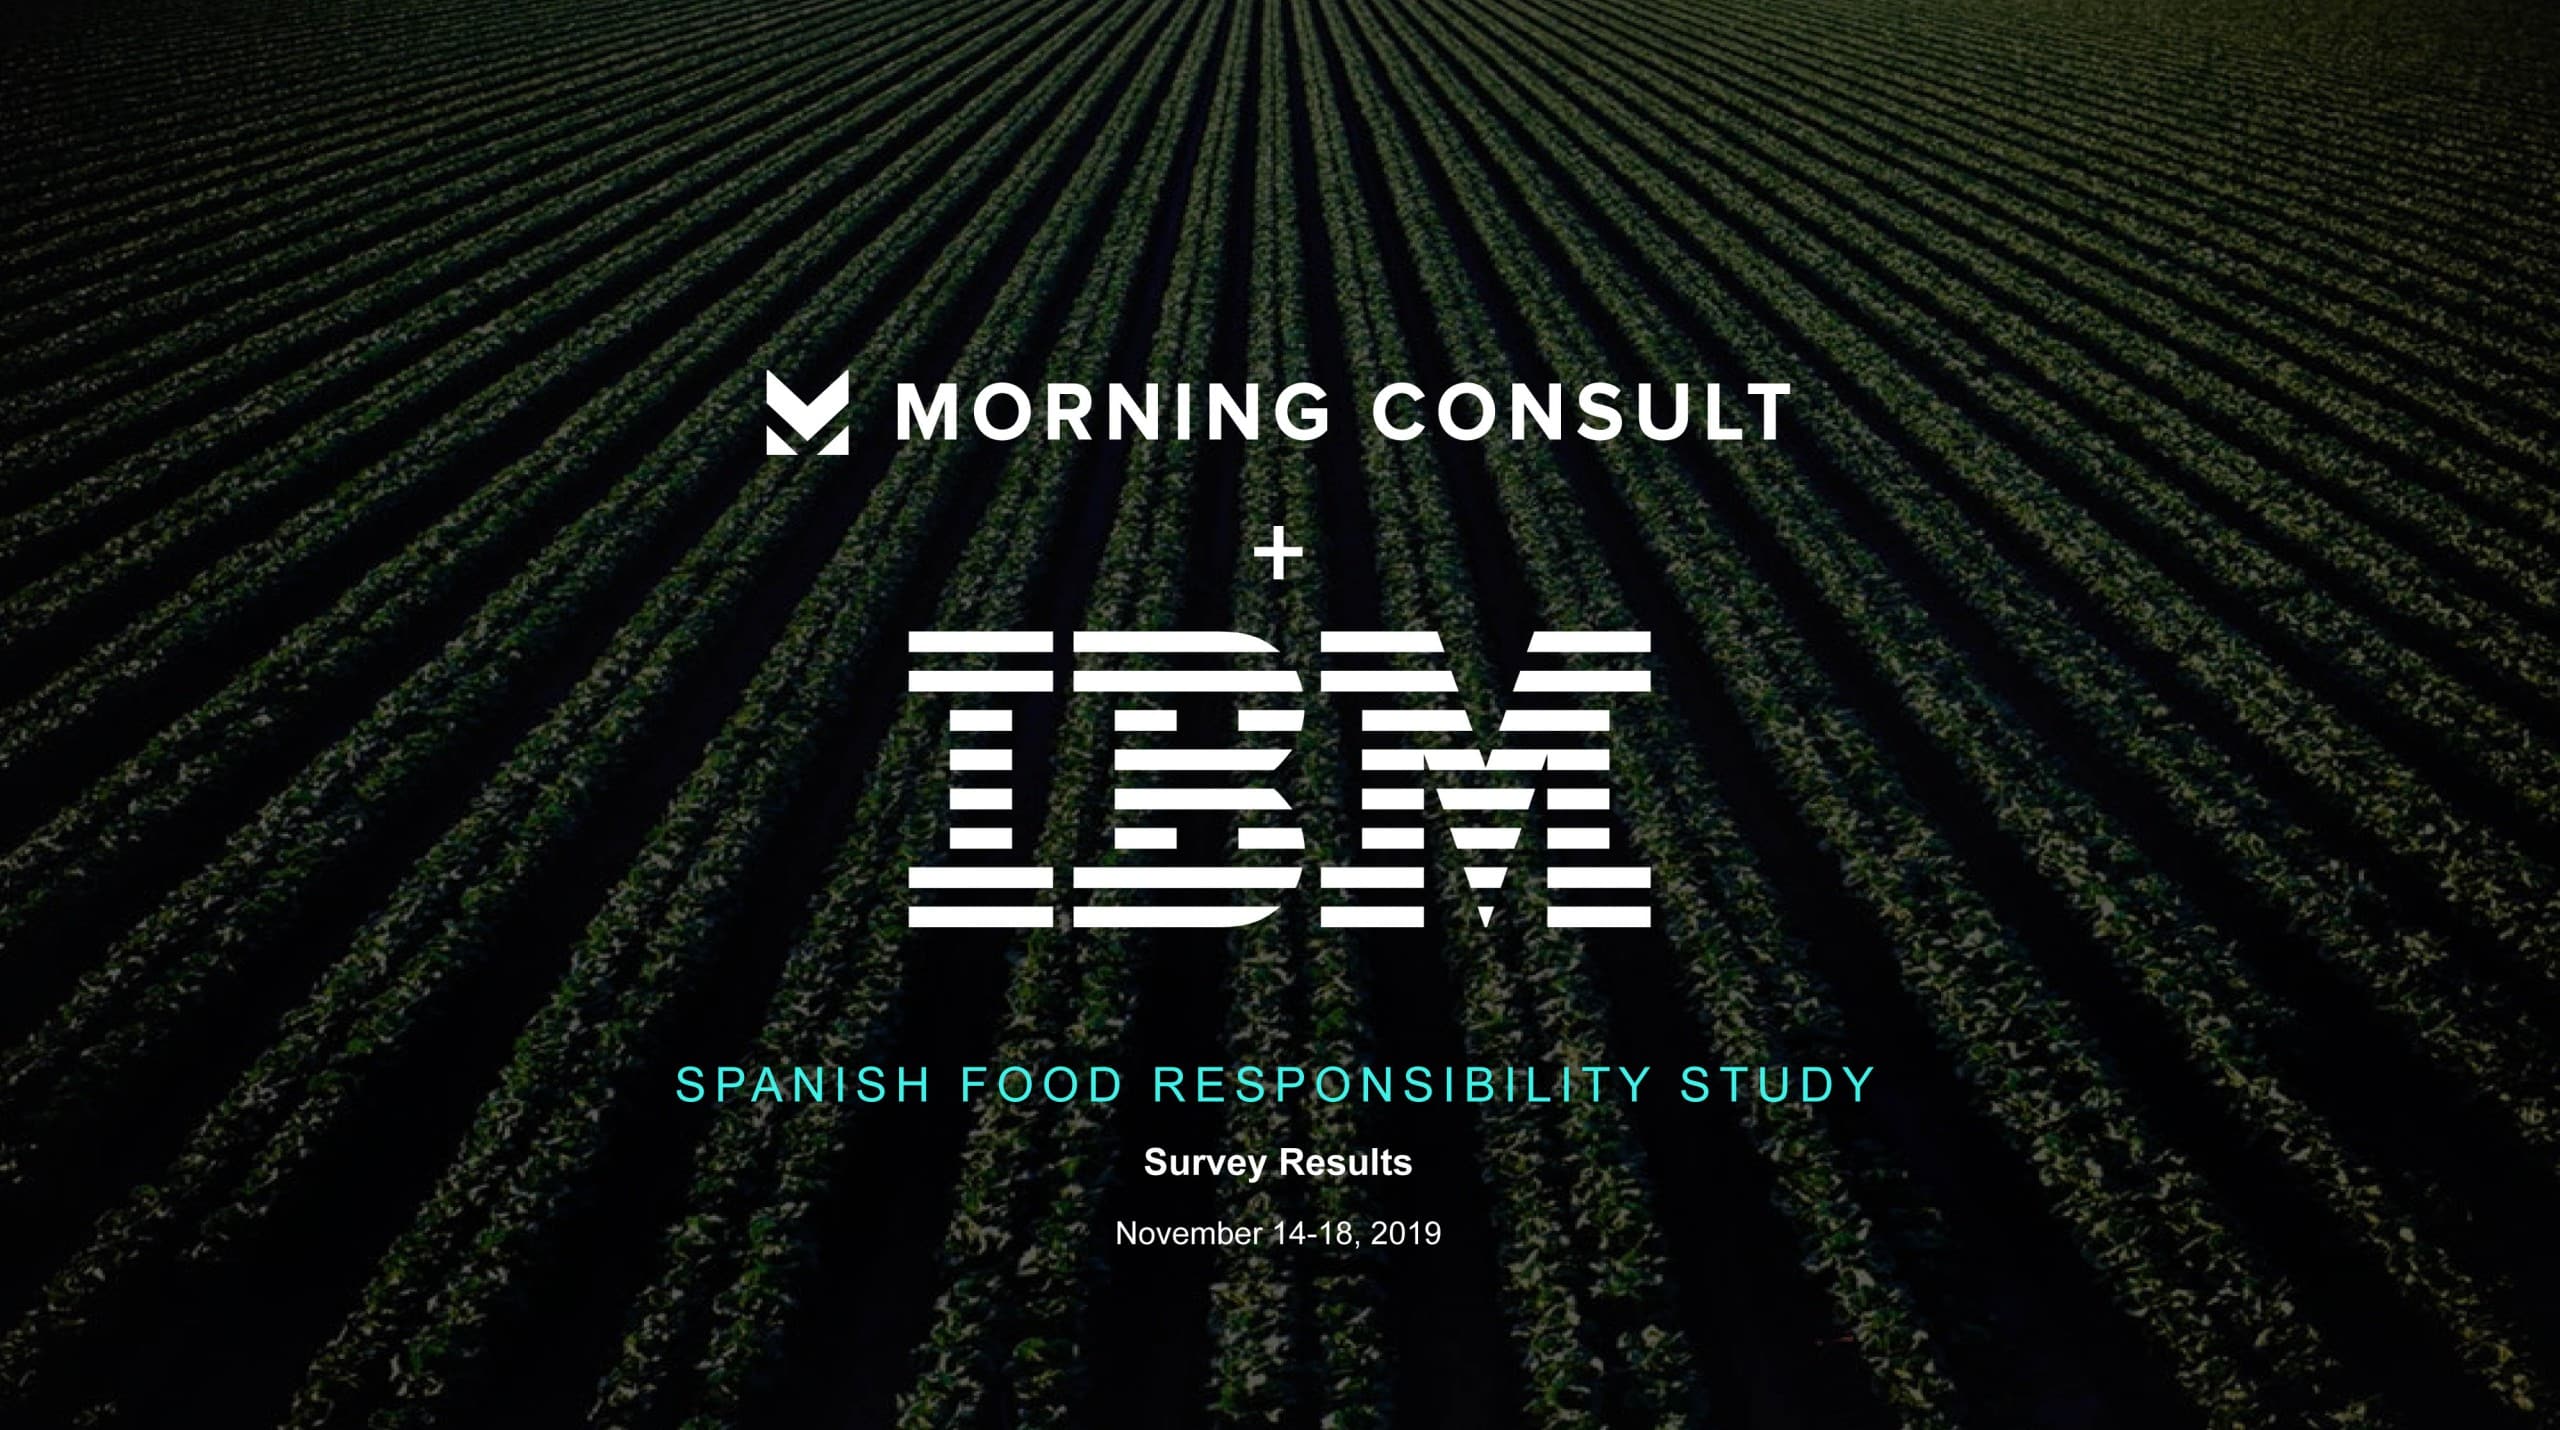 Los españoles, preocupados por la producción “ética” de los alimentos, según un estudio para IBM